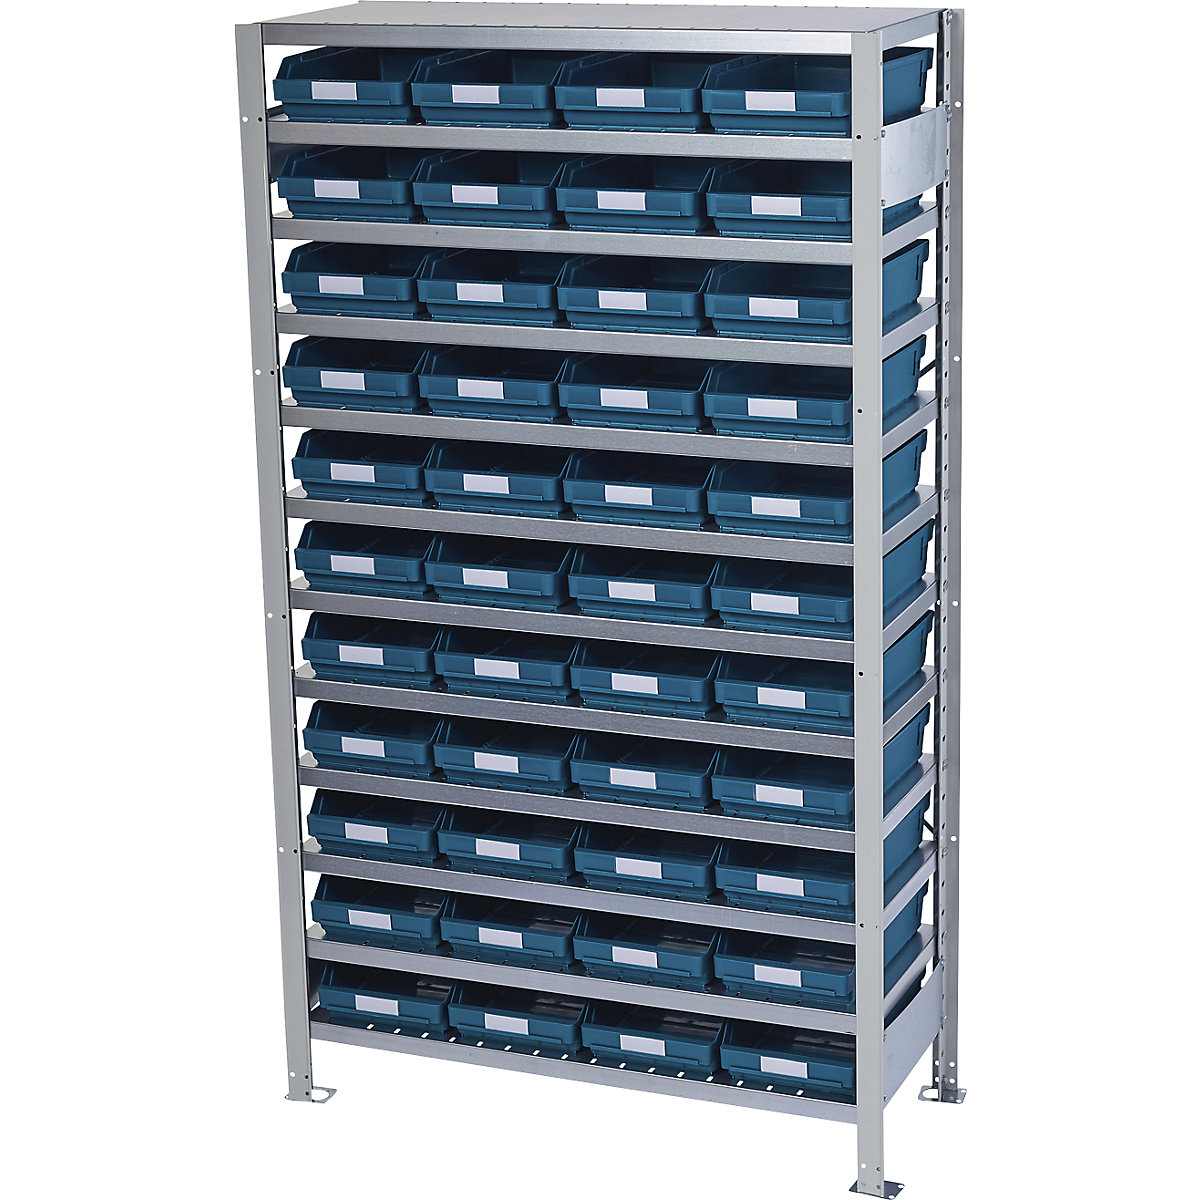 Estante de encaixar com caixas para estante – STEMO, altura da estante 1790 mm, estante básica, profundidade 300 mm, 44 caixas verdes-39